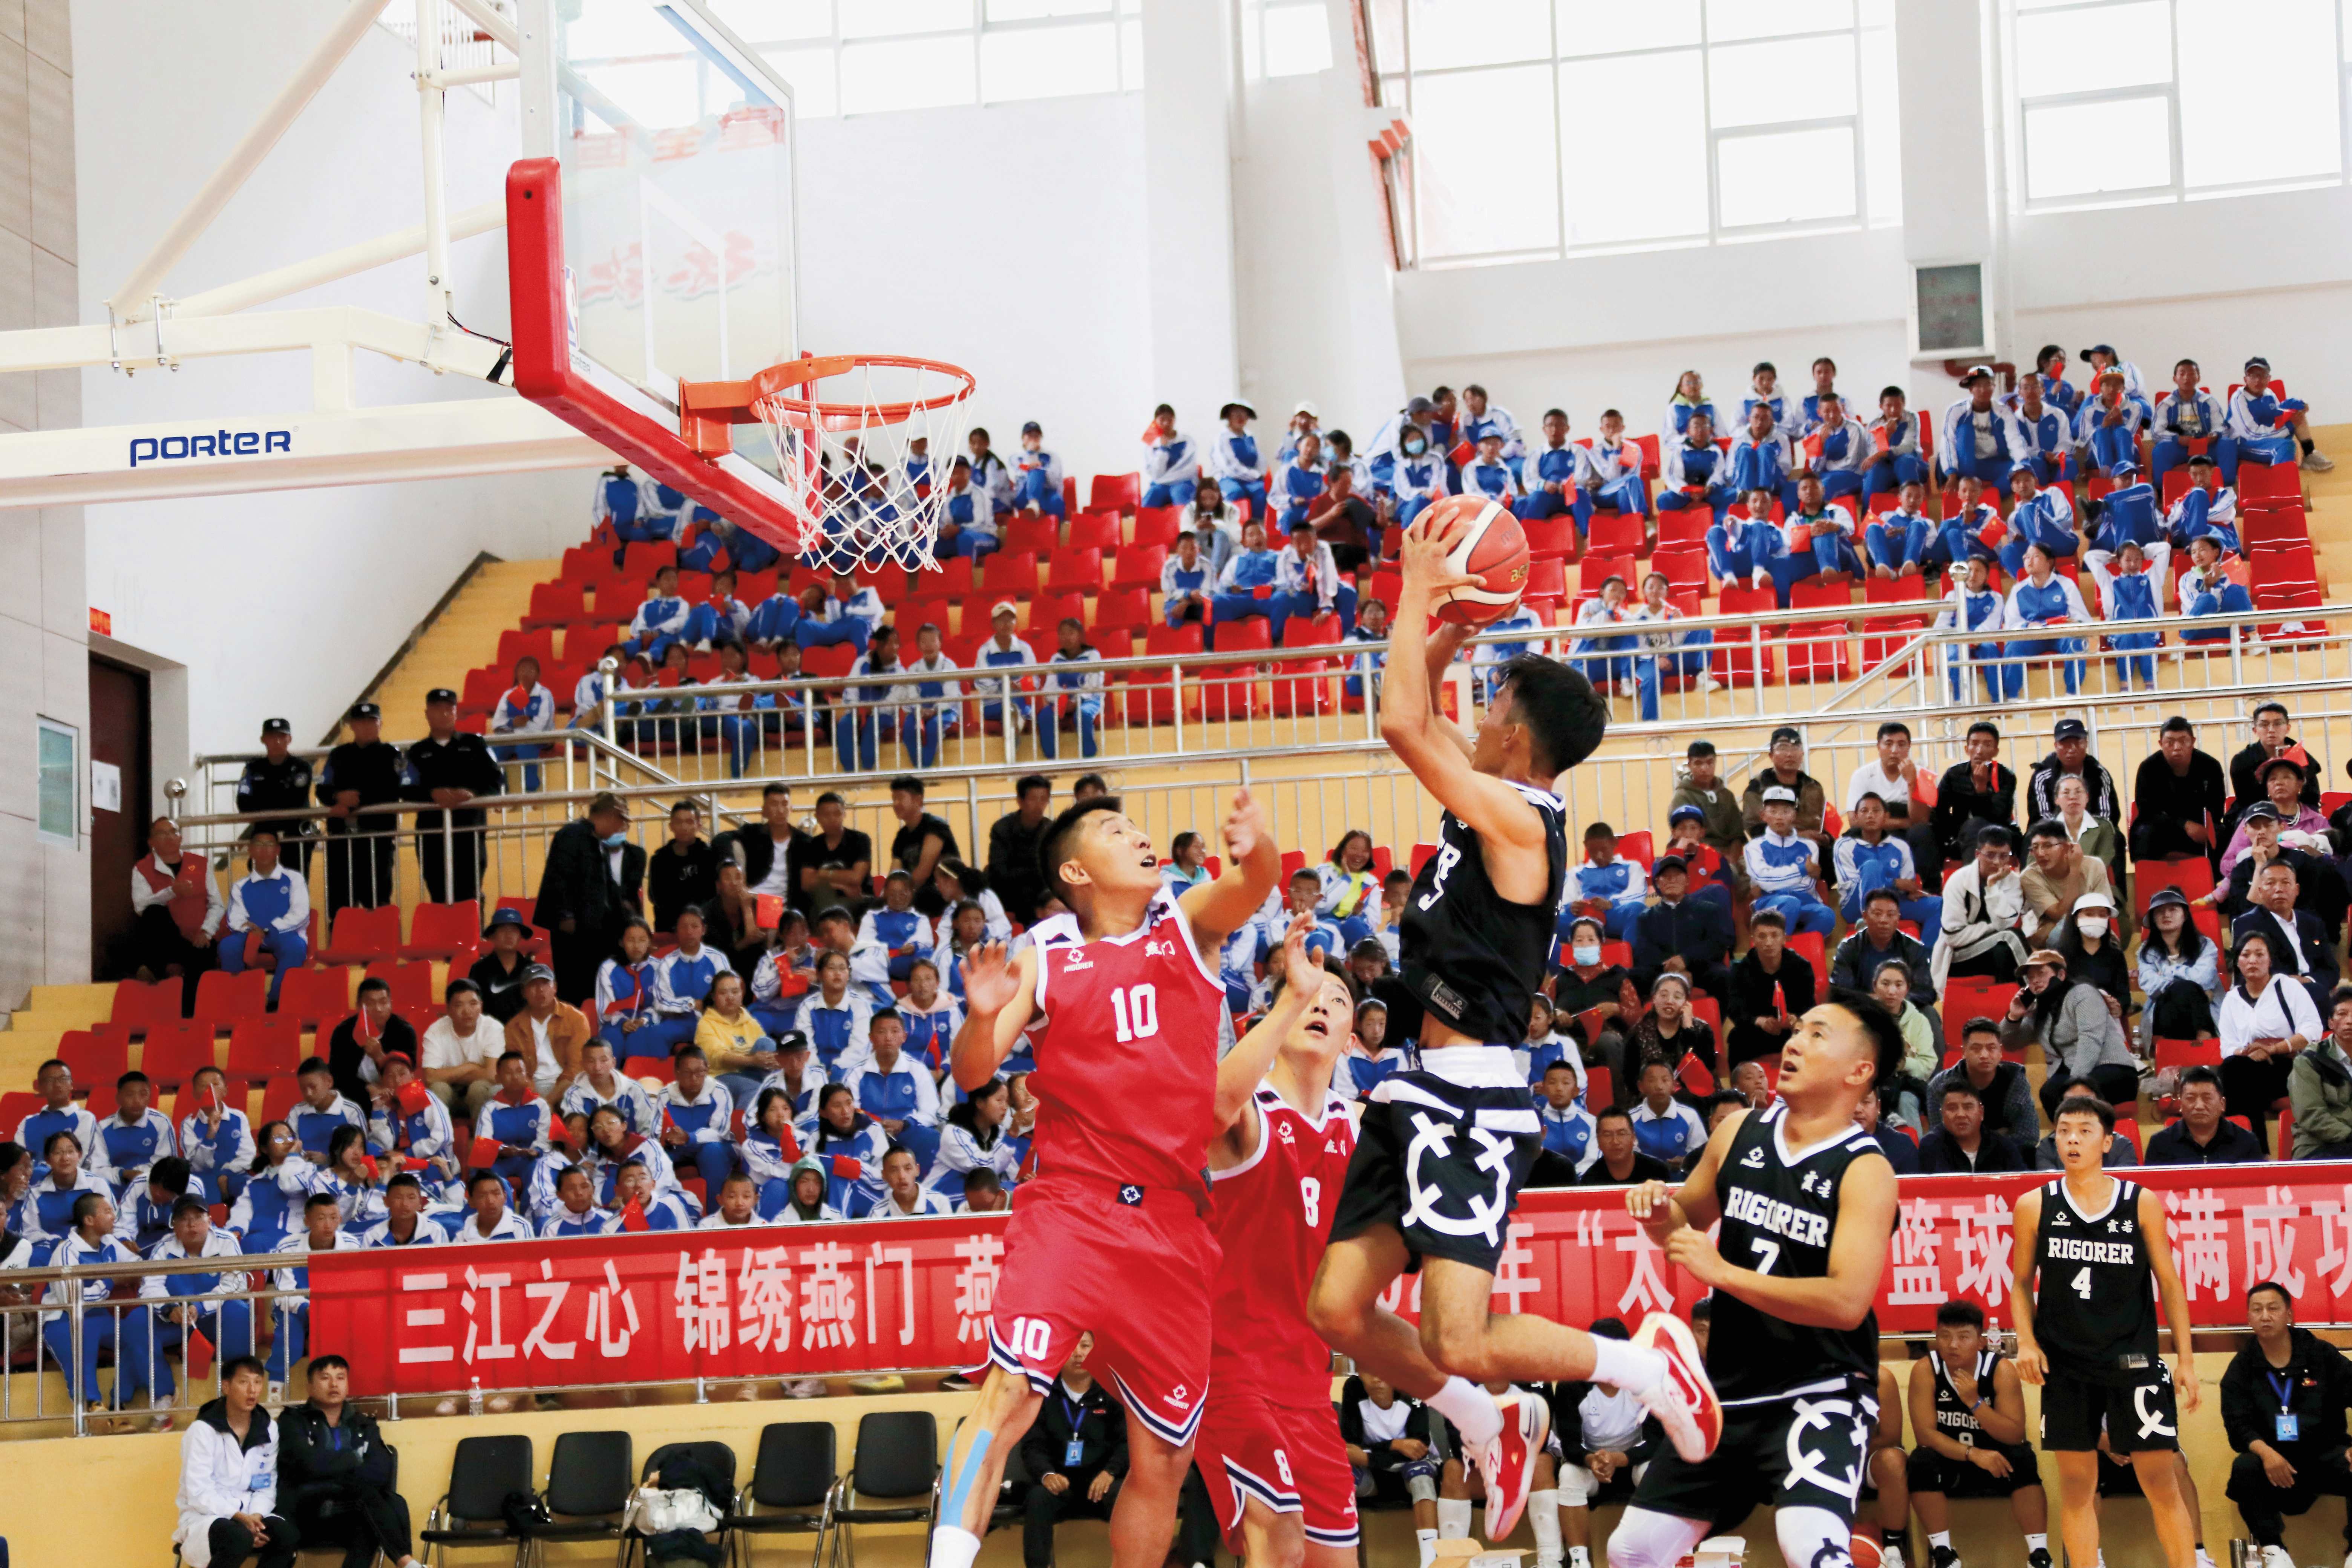 （江初）“太子杯”篮球赛已经成为了德钦县民族团结的又一盛会。图为太子杯篮球赛现场.jpg